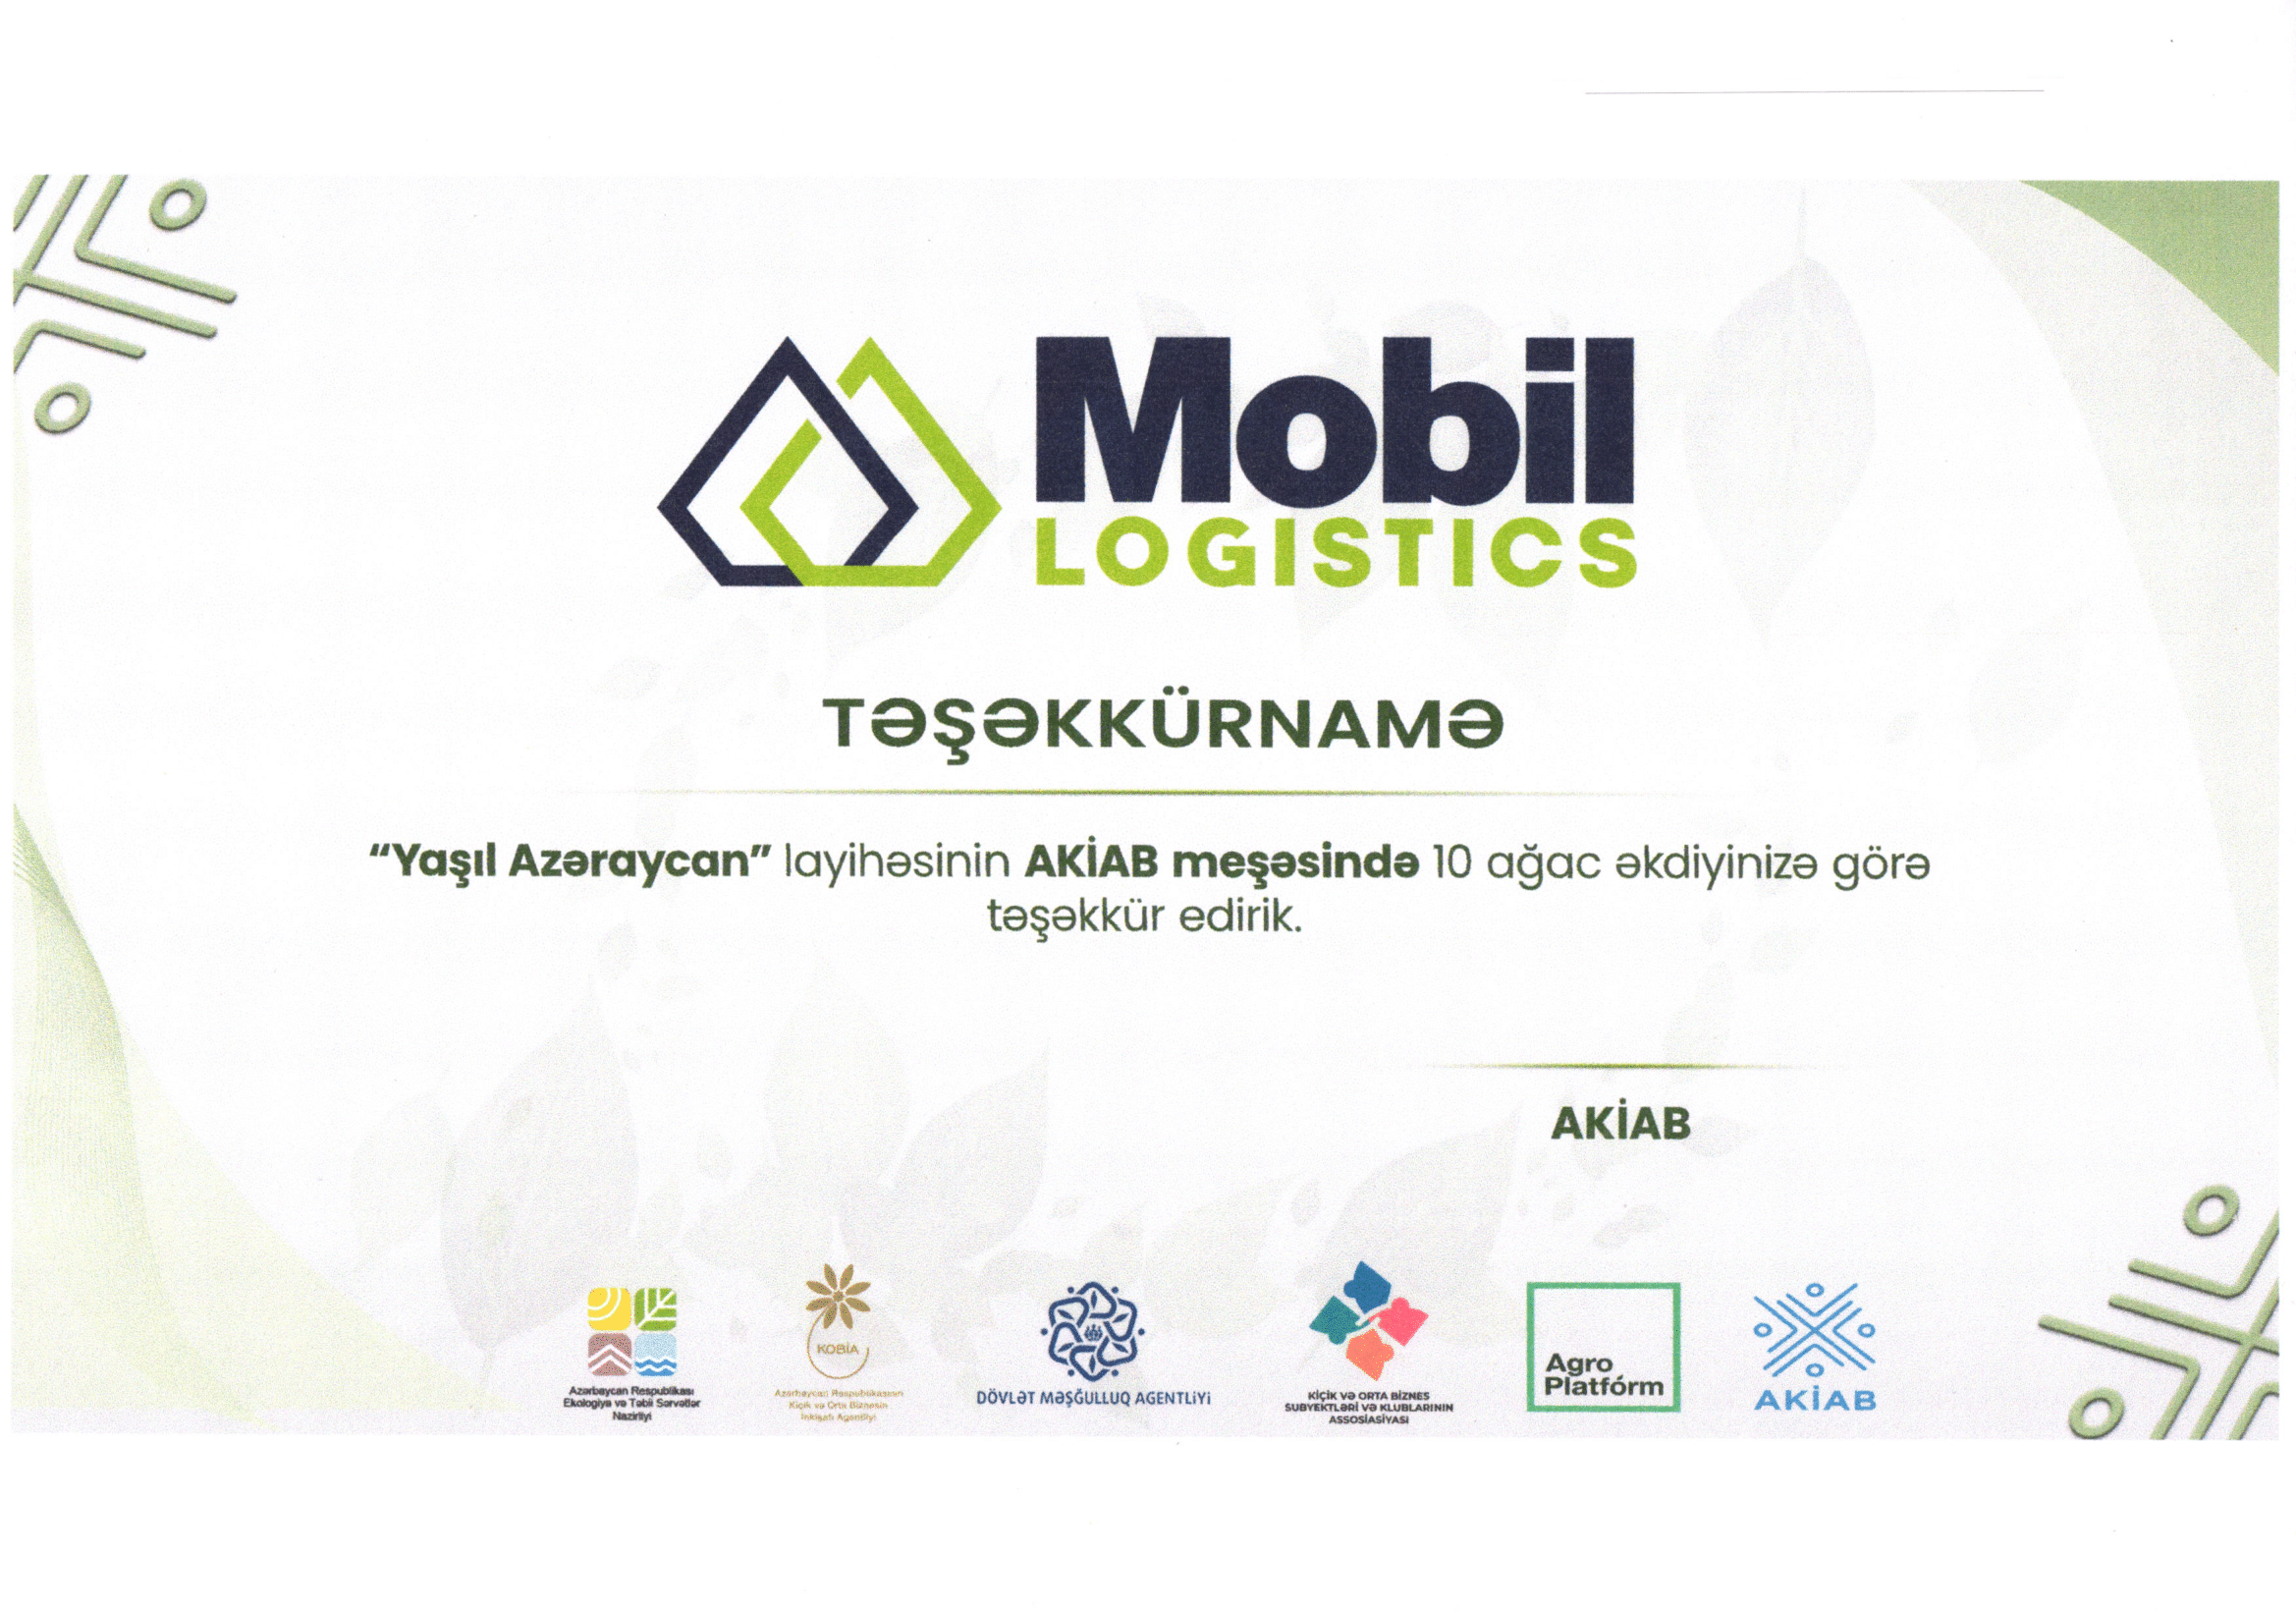 Mobil Logistics